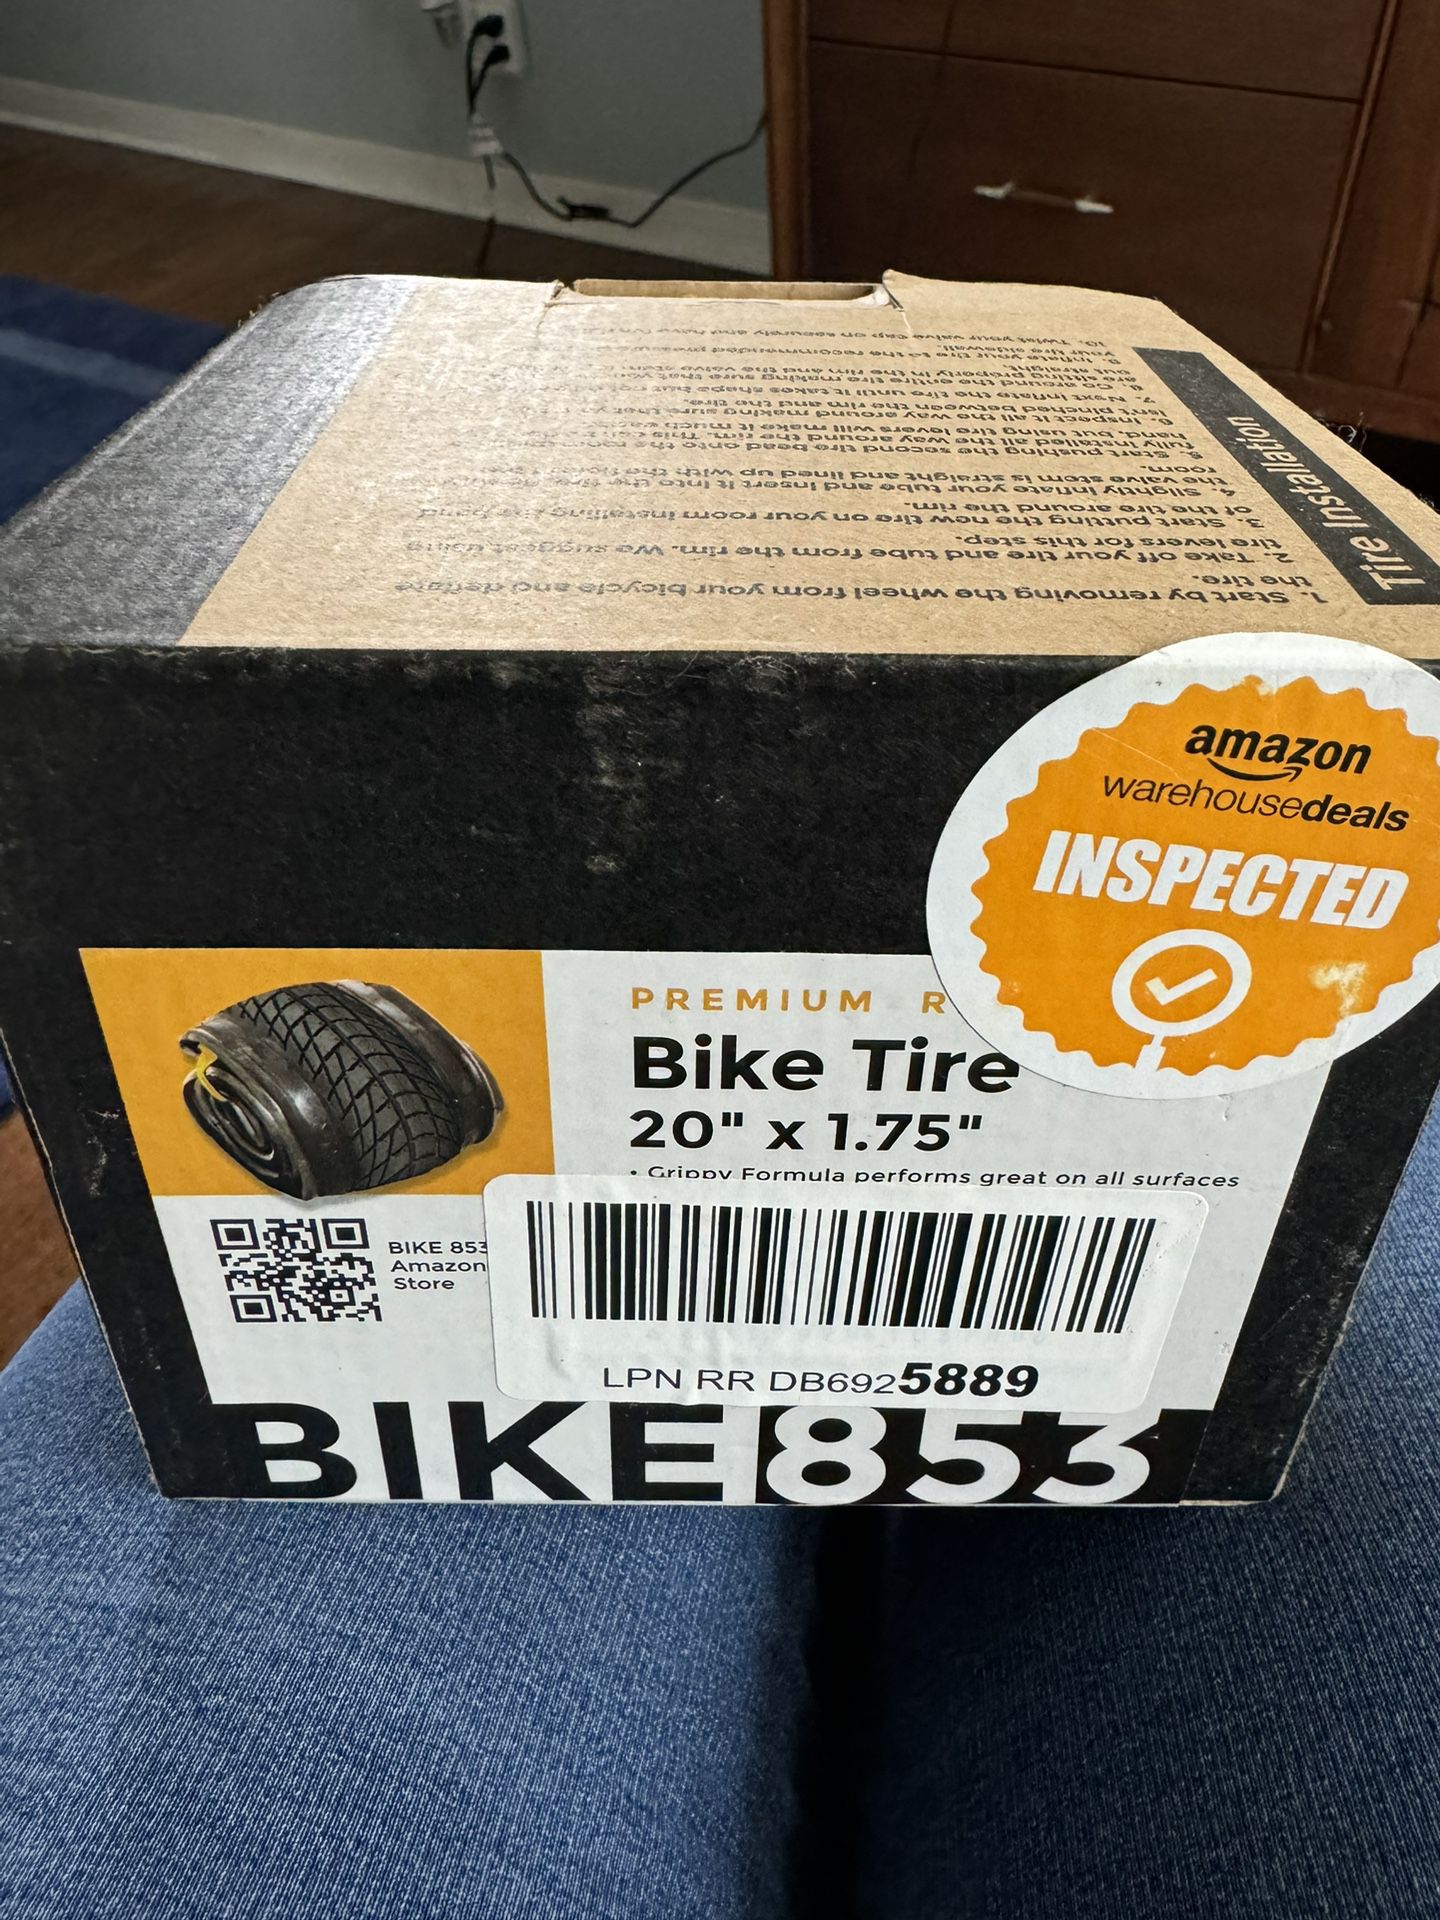 20” X 1.75” Bike Tire - Brand New